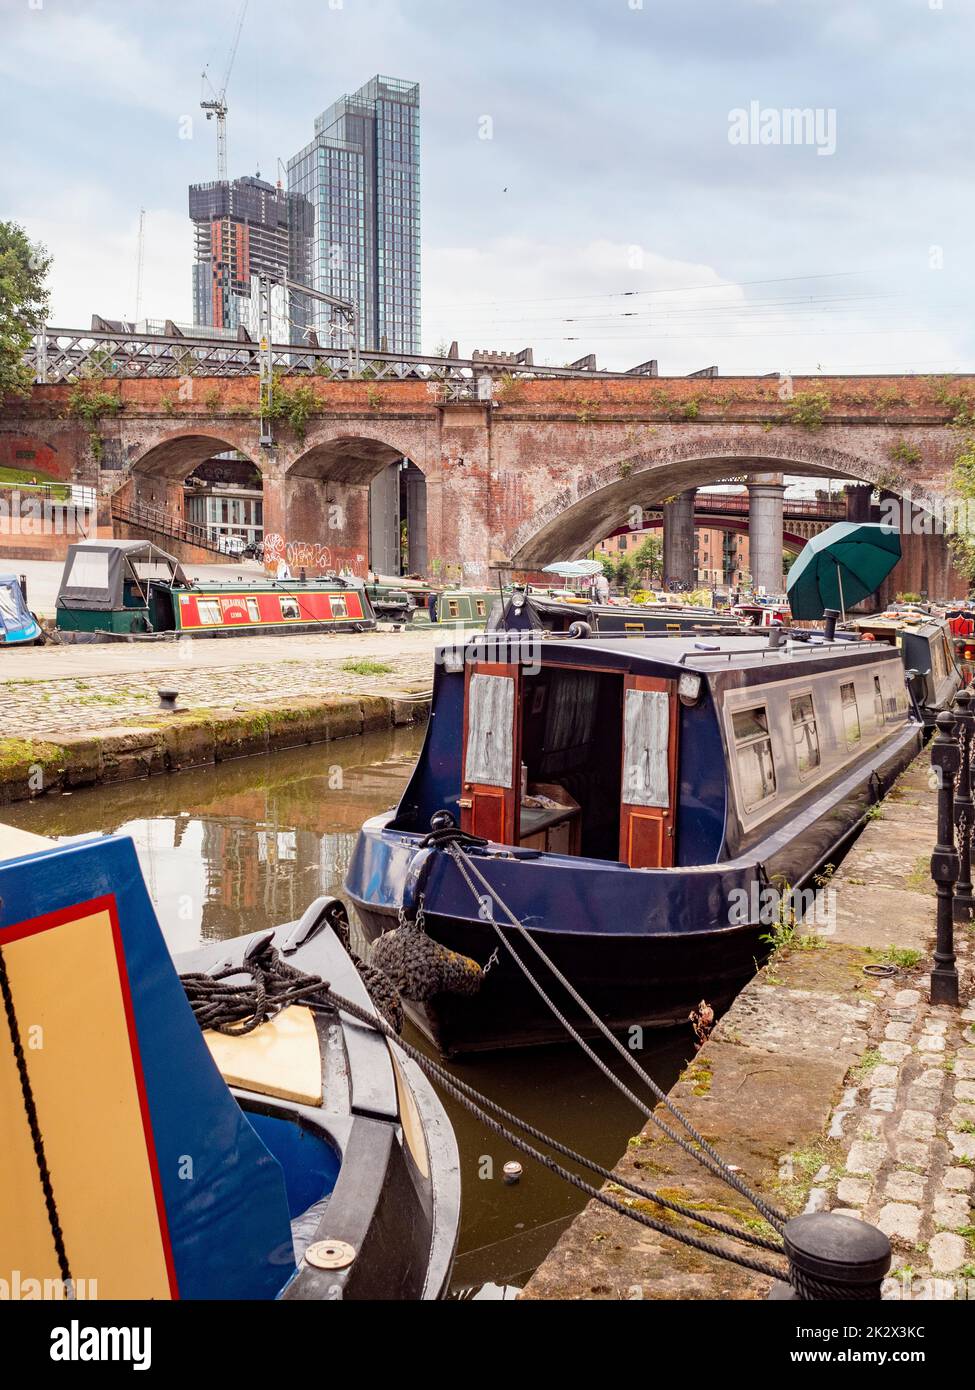 Des bateaux étroits amarrés dans le bras Staffordshire du canal Bridgewater avec Elizabeth Tower au loin. Manchester, Royaume-Uni. Banque D'Images